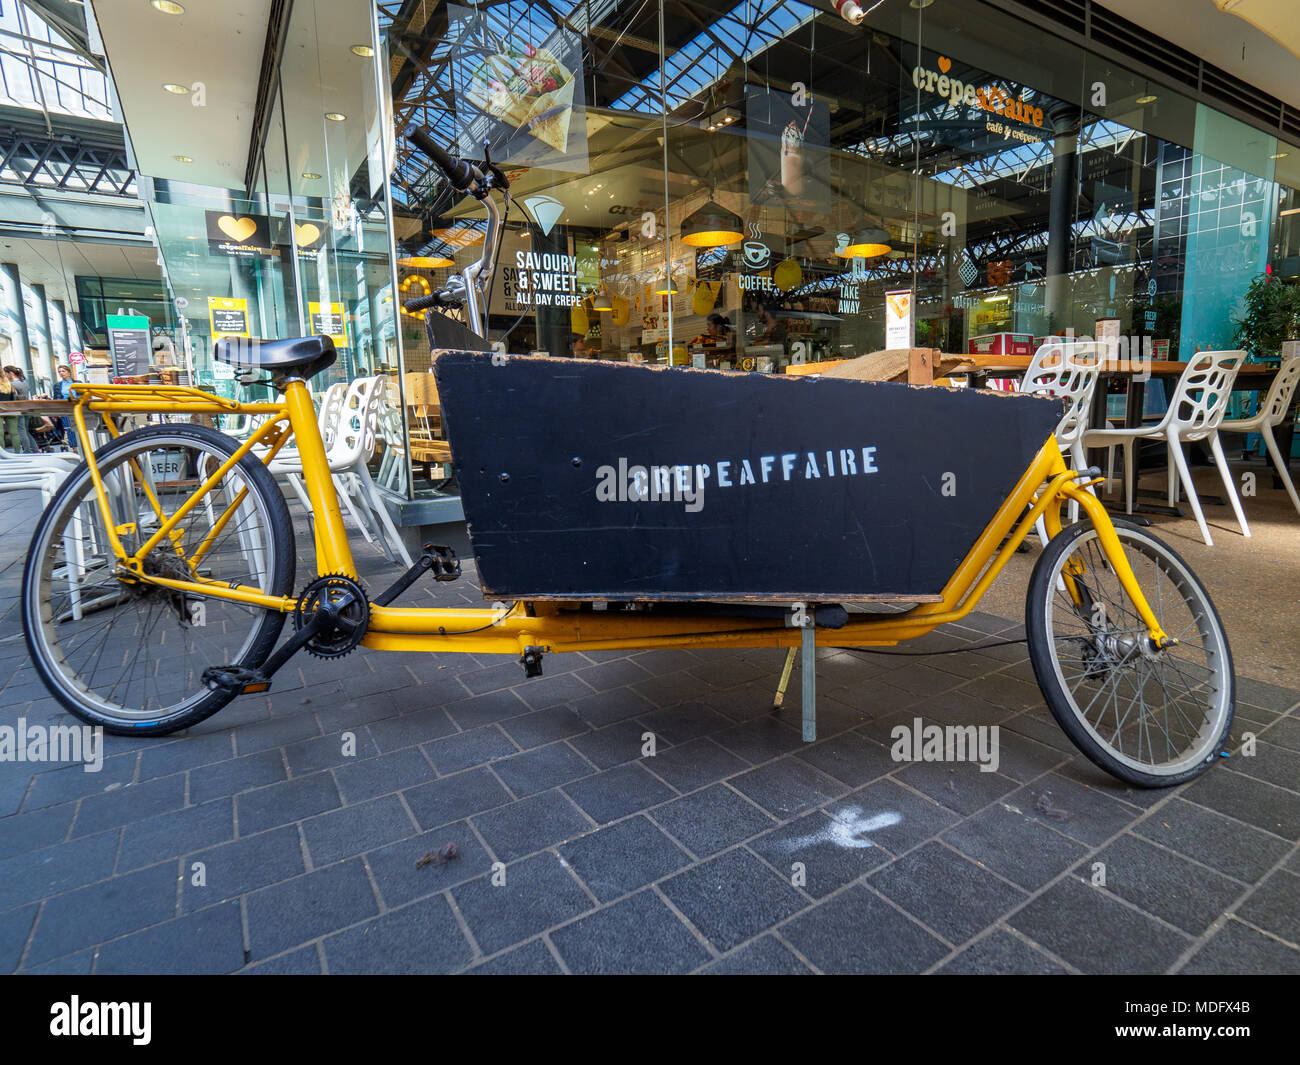 CrepeAffaire-a cargo bike außerhalb einer Crêpeaffaire Restaurant im Londoner Spitalfields Market geparkt Stockfoto